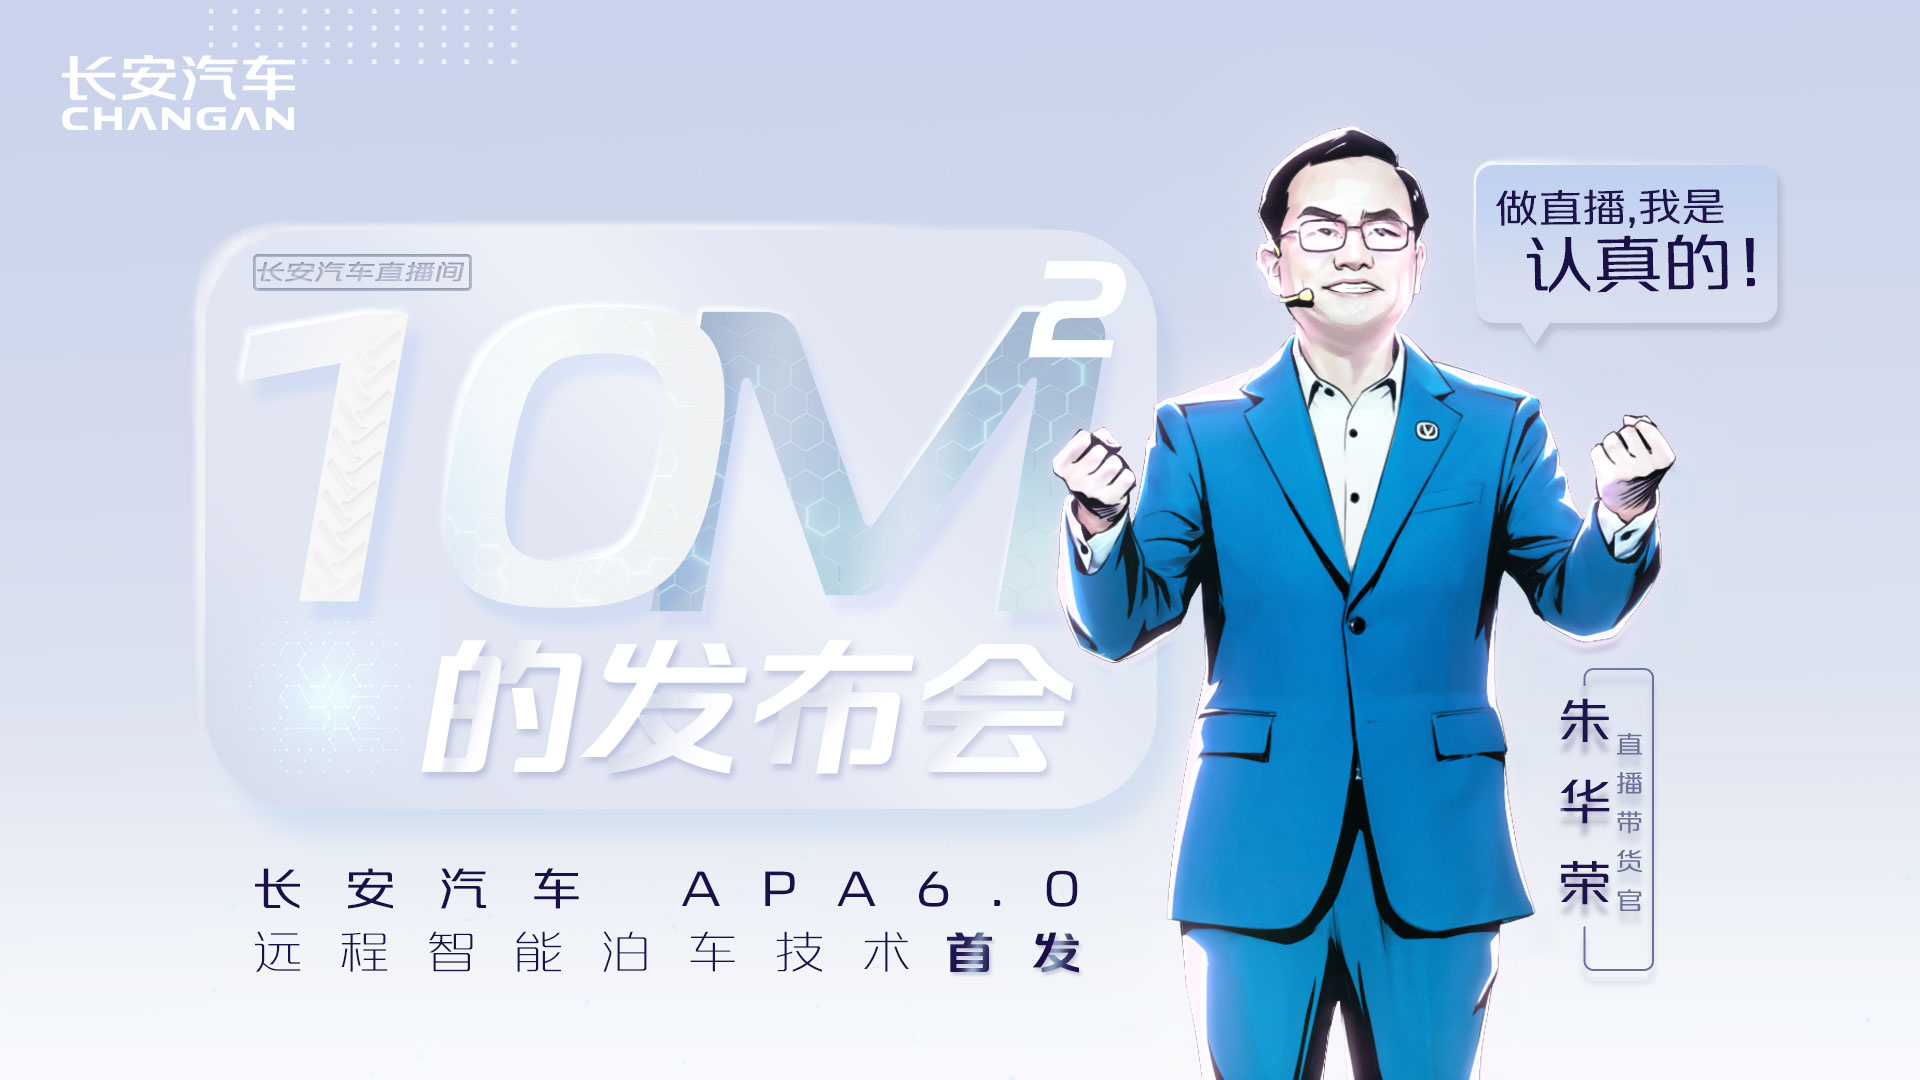 十平米发布会 APA6.0技术首发